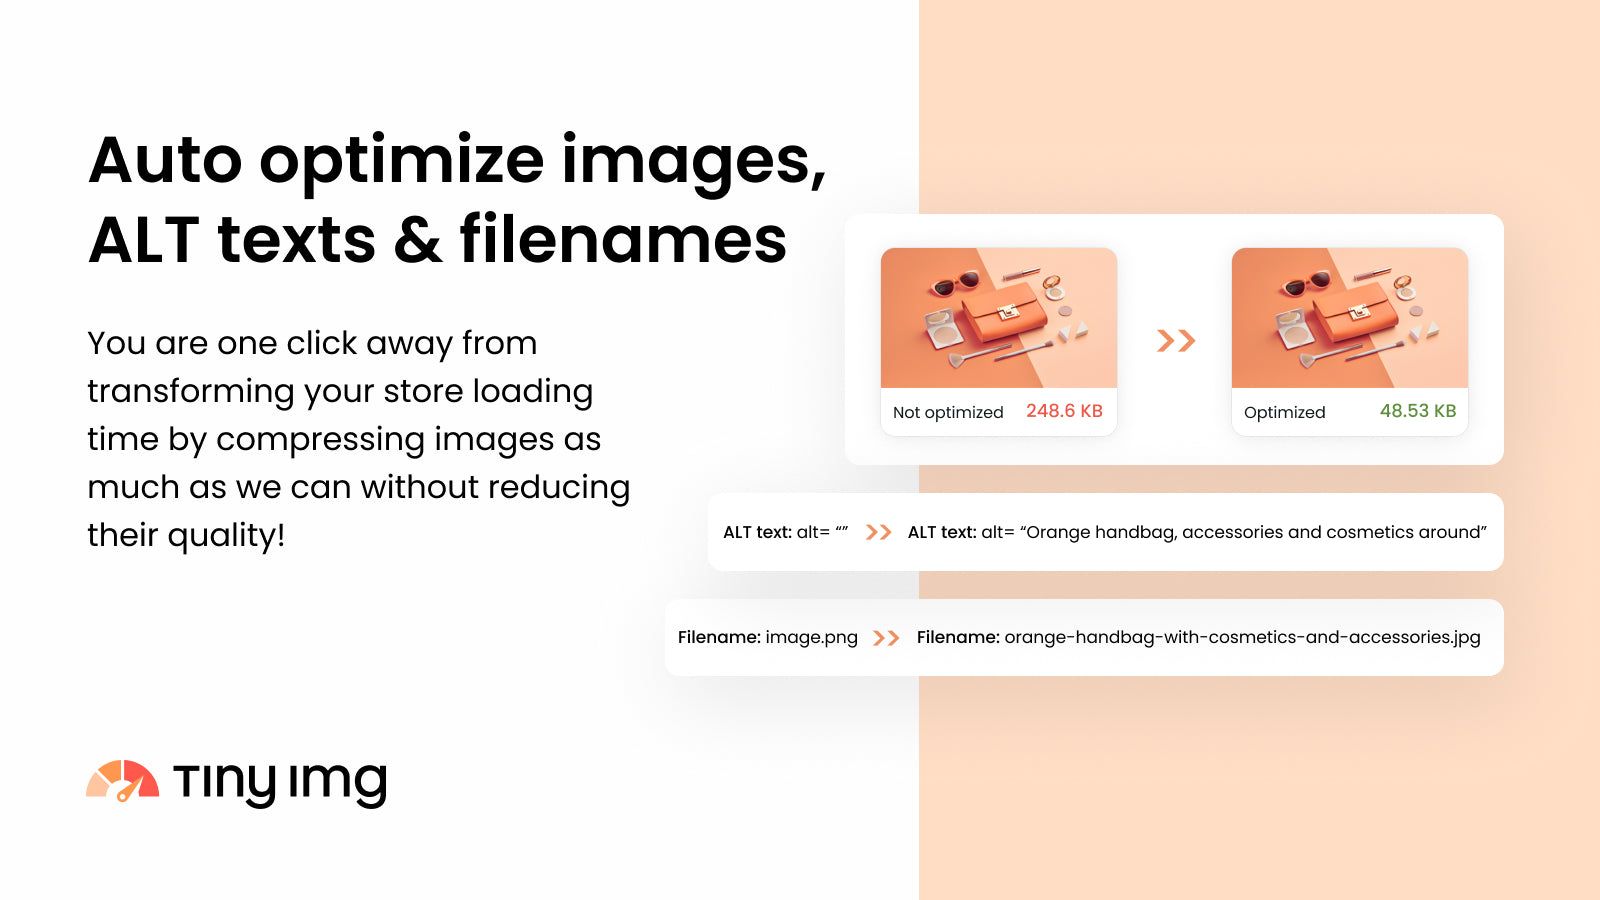 Automatically optimize images, ALT texts & filenames